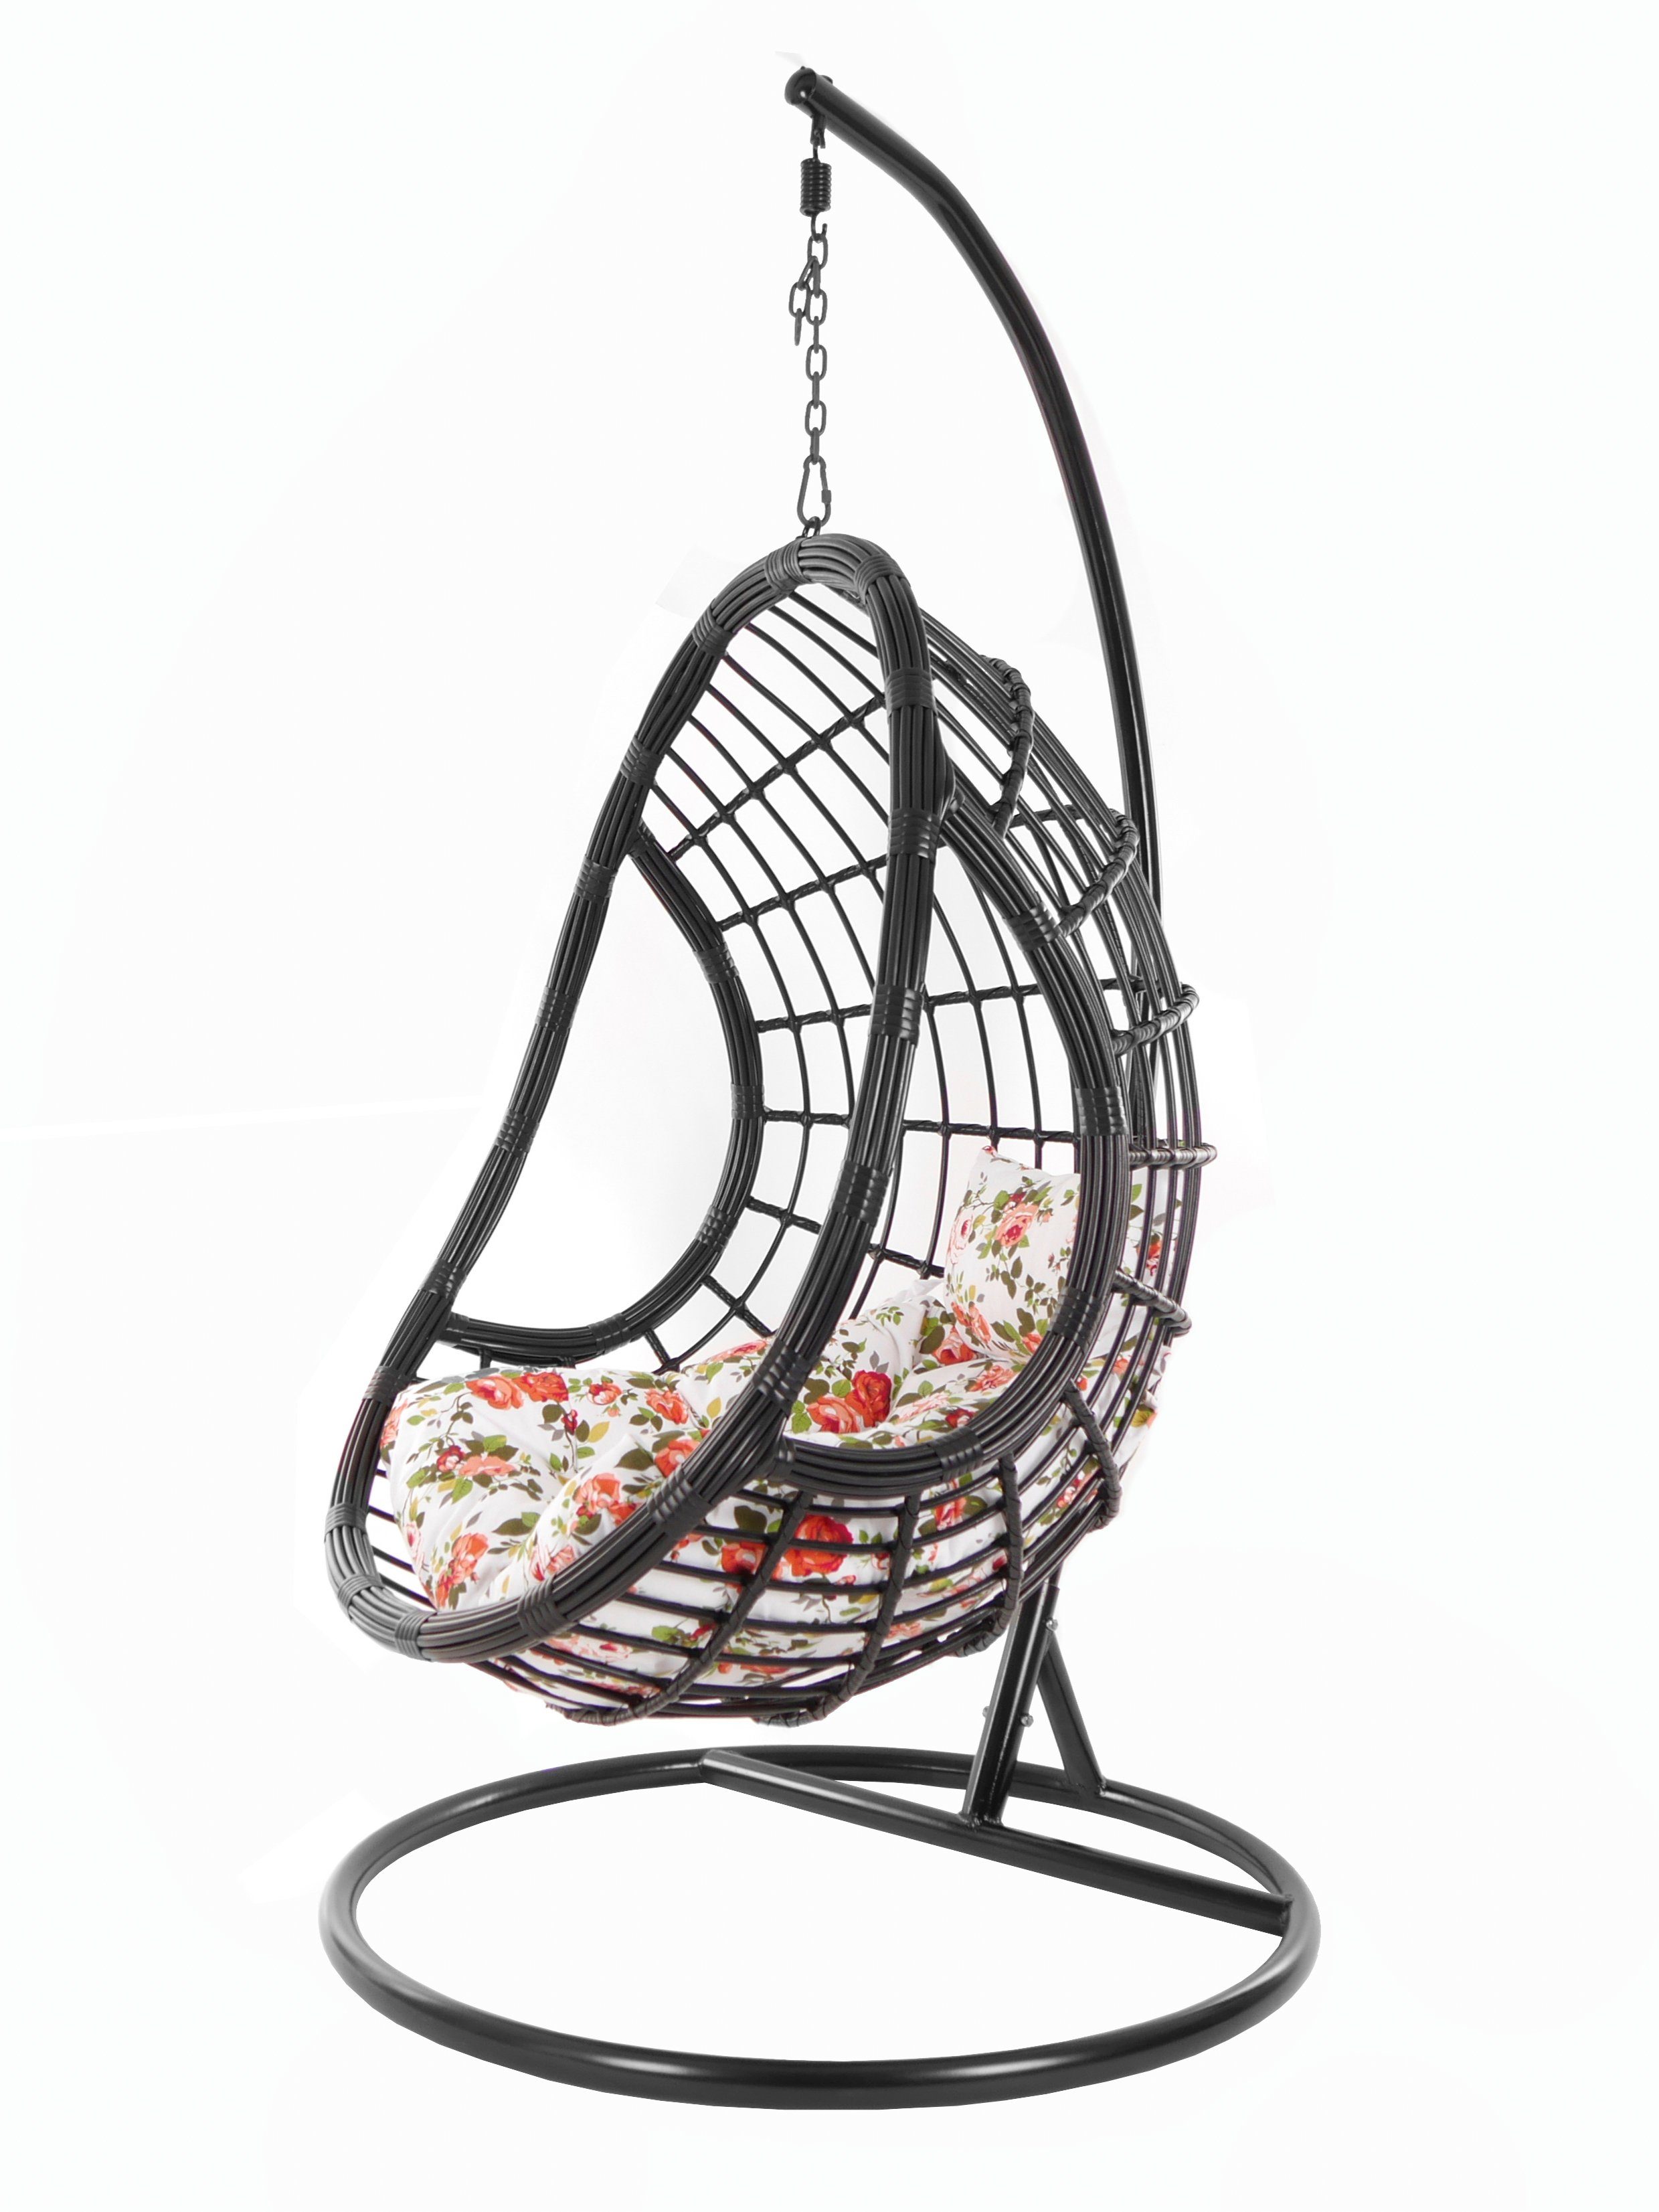 und KIDEO PALMANOVA Chair, mit black, Gestell schwarz, edles Hängesessel Hängesessel Kissen, Swing Schwebesessel, (3761 Design Loungemöbel, rosen roses)